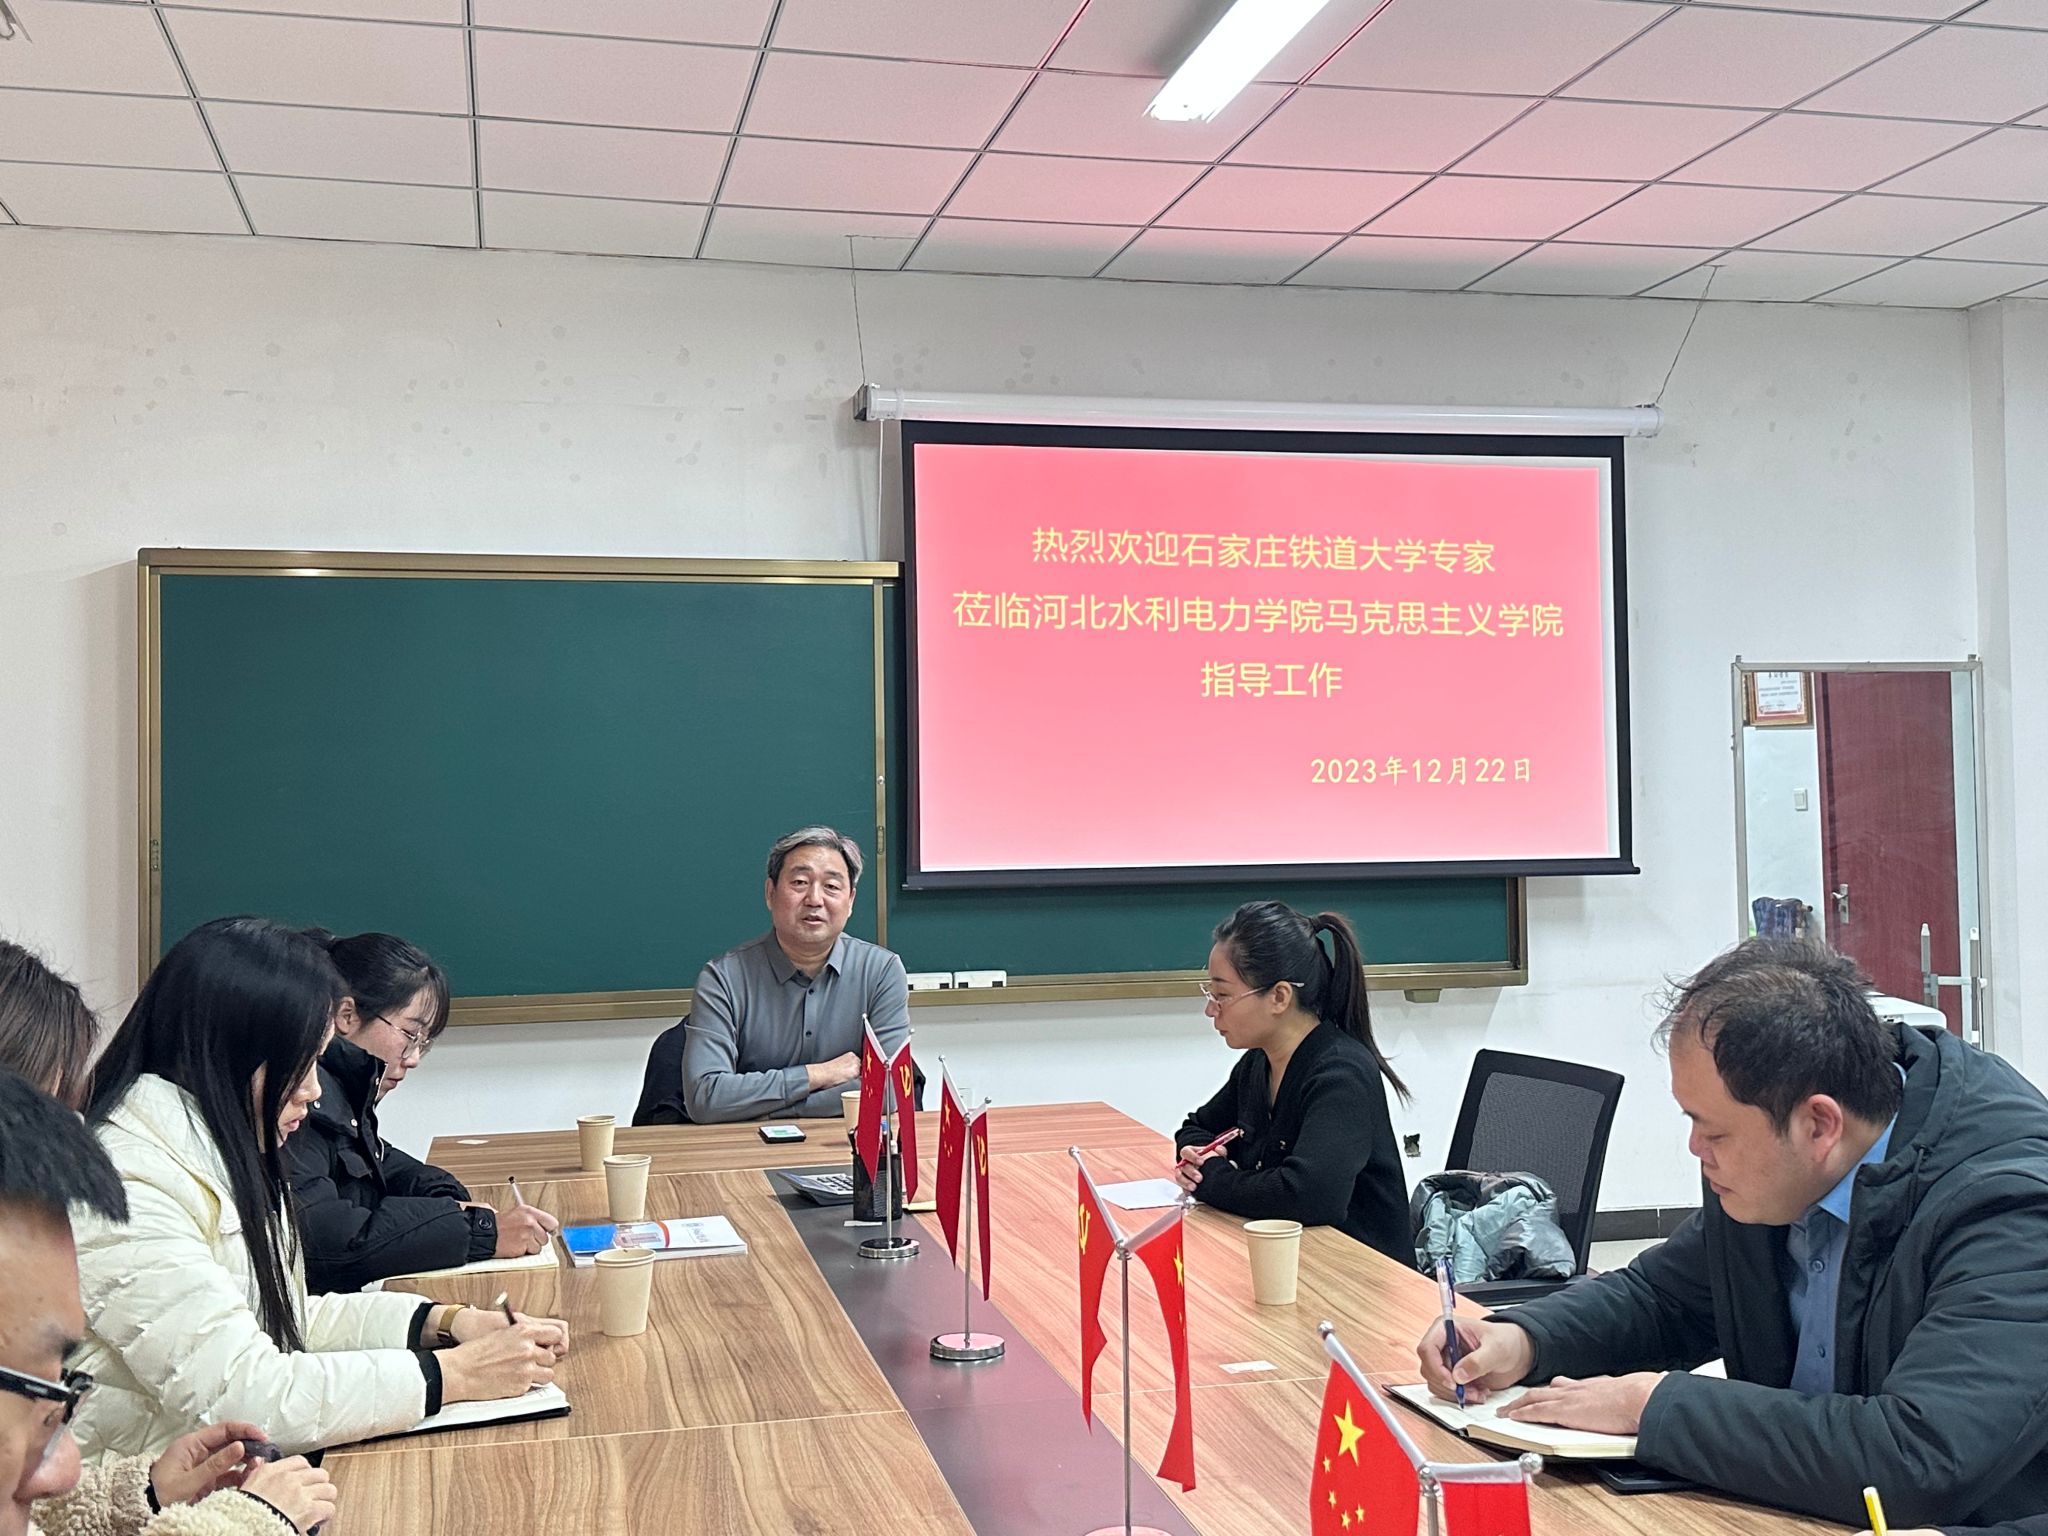 我校邀请石家庄铁道大学马克思主义学院王宏斌教授开展学术科研指导讲座